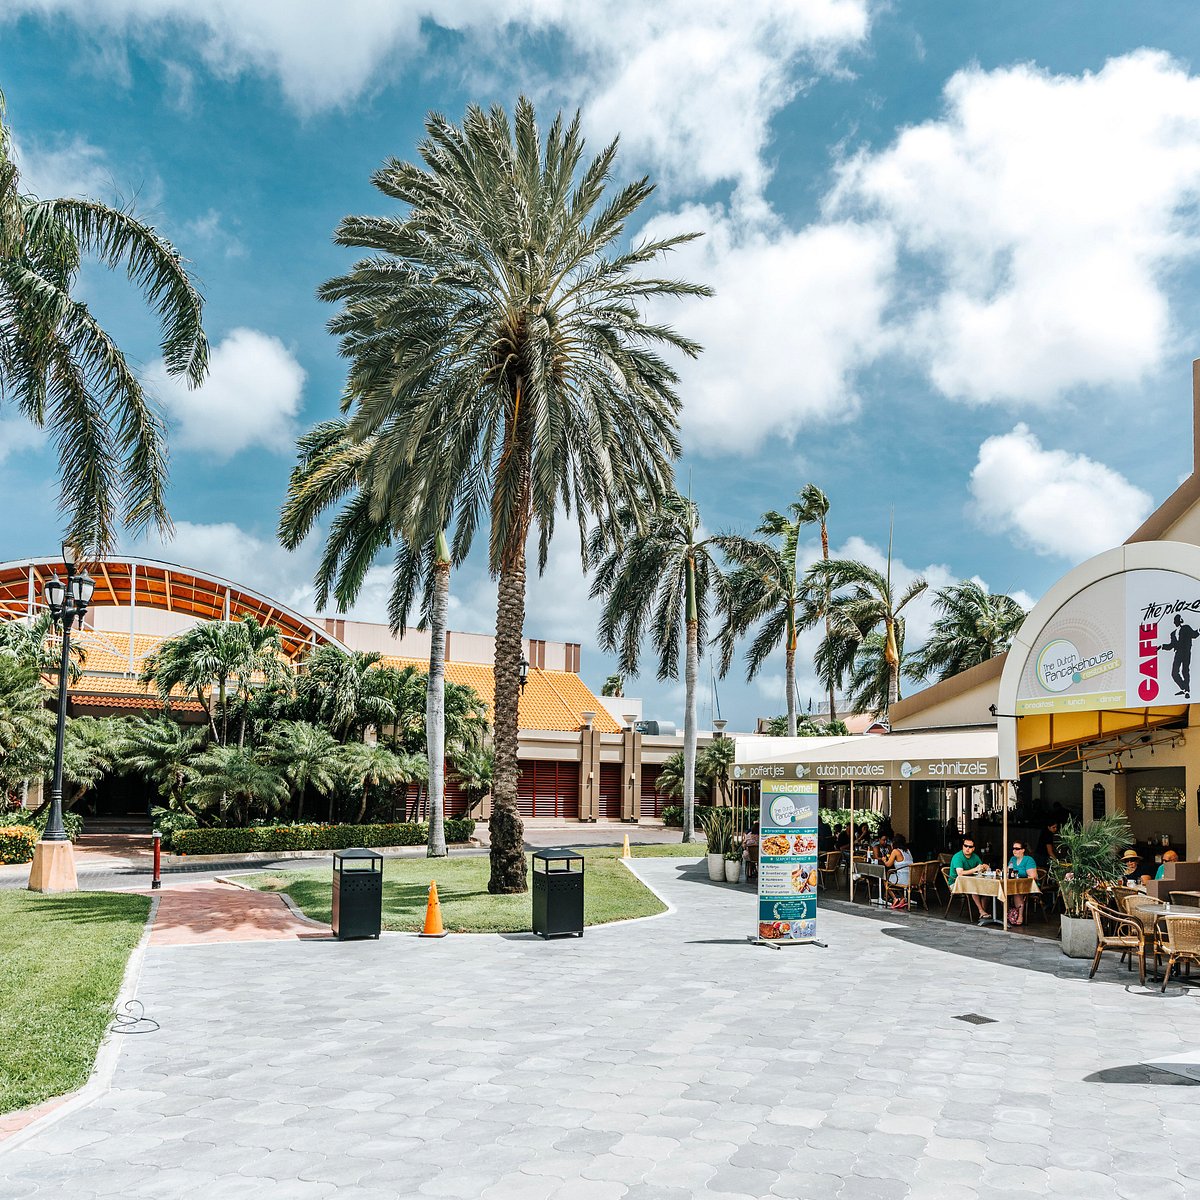 Un plus por Navidad - Picture of Renaissance Mall, Aruba - Tripadvisor